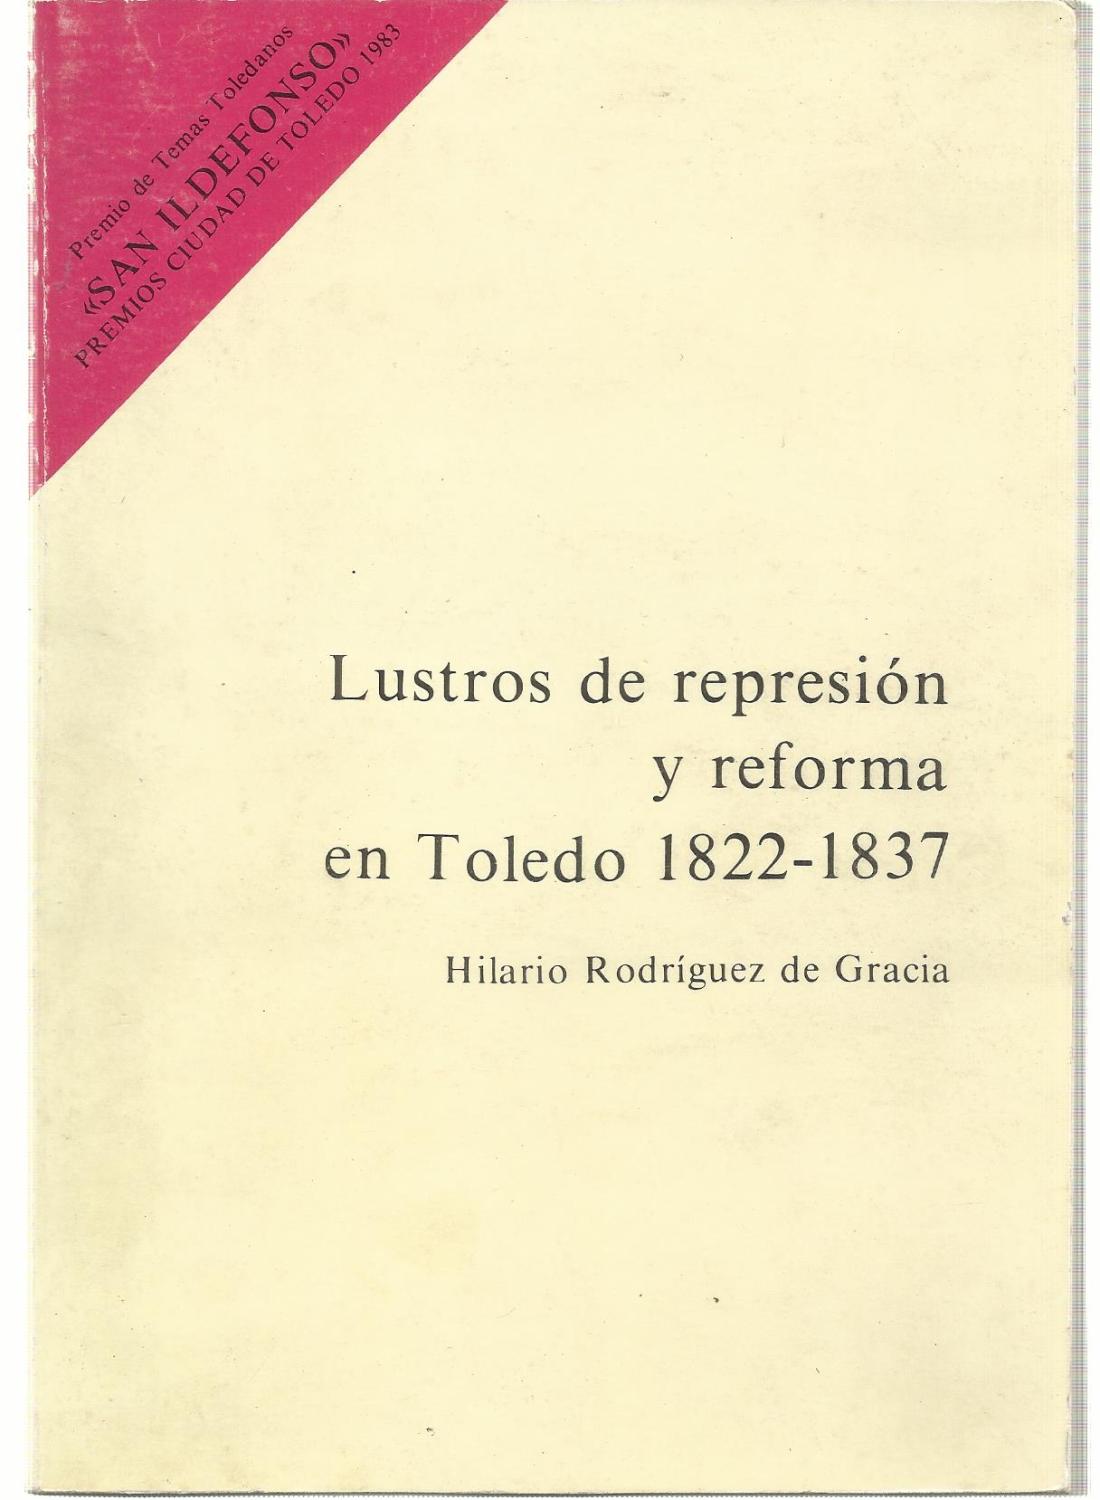 Lustros de represion y reforma en Toledo, 1822-1837 - Hilario Rodriguez de Gracia